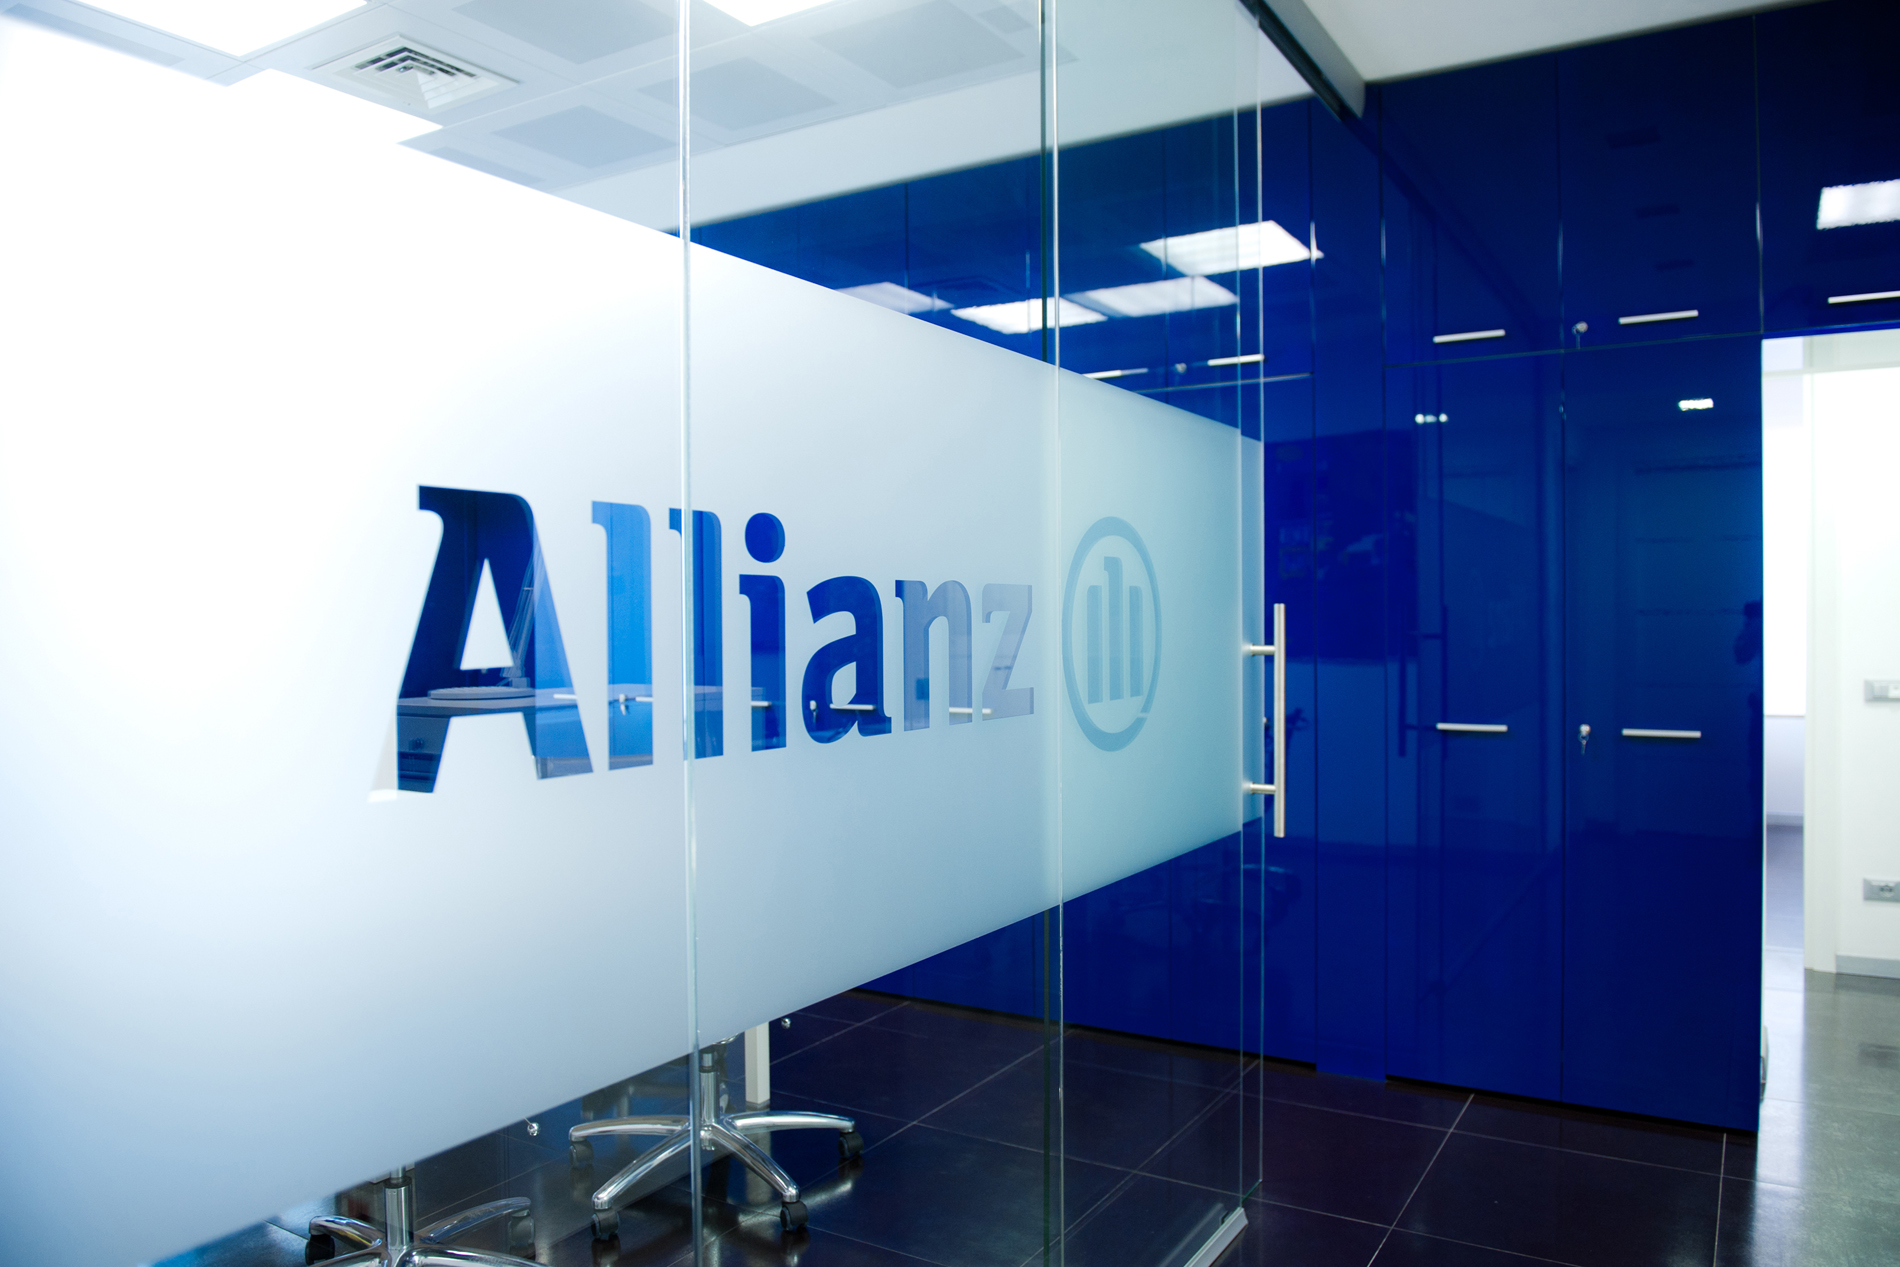 Allianz 10 - dettaglio